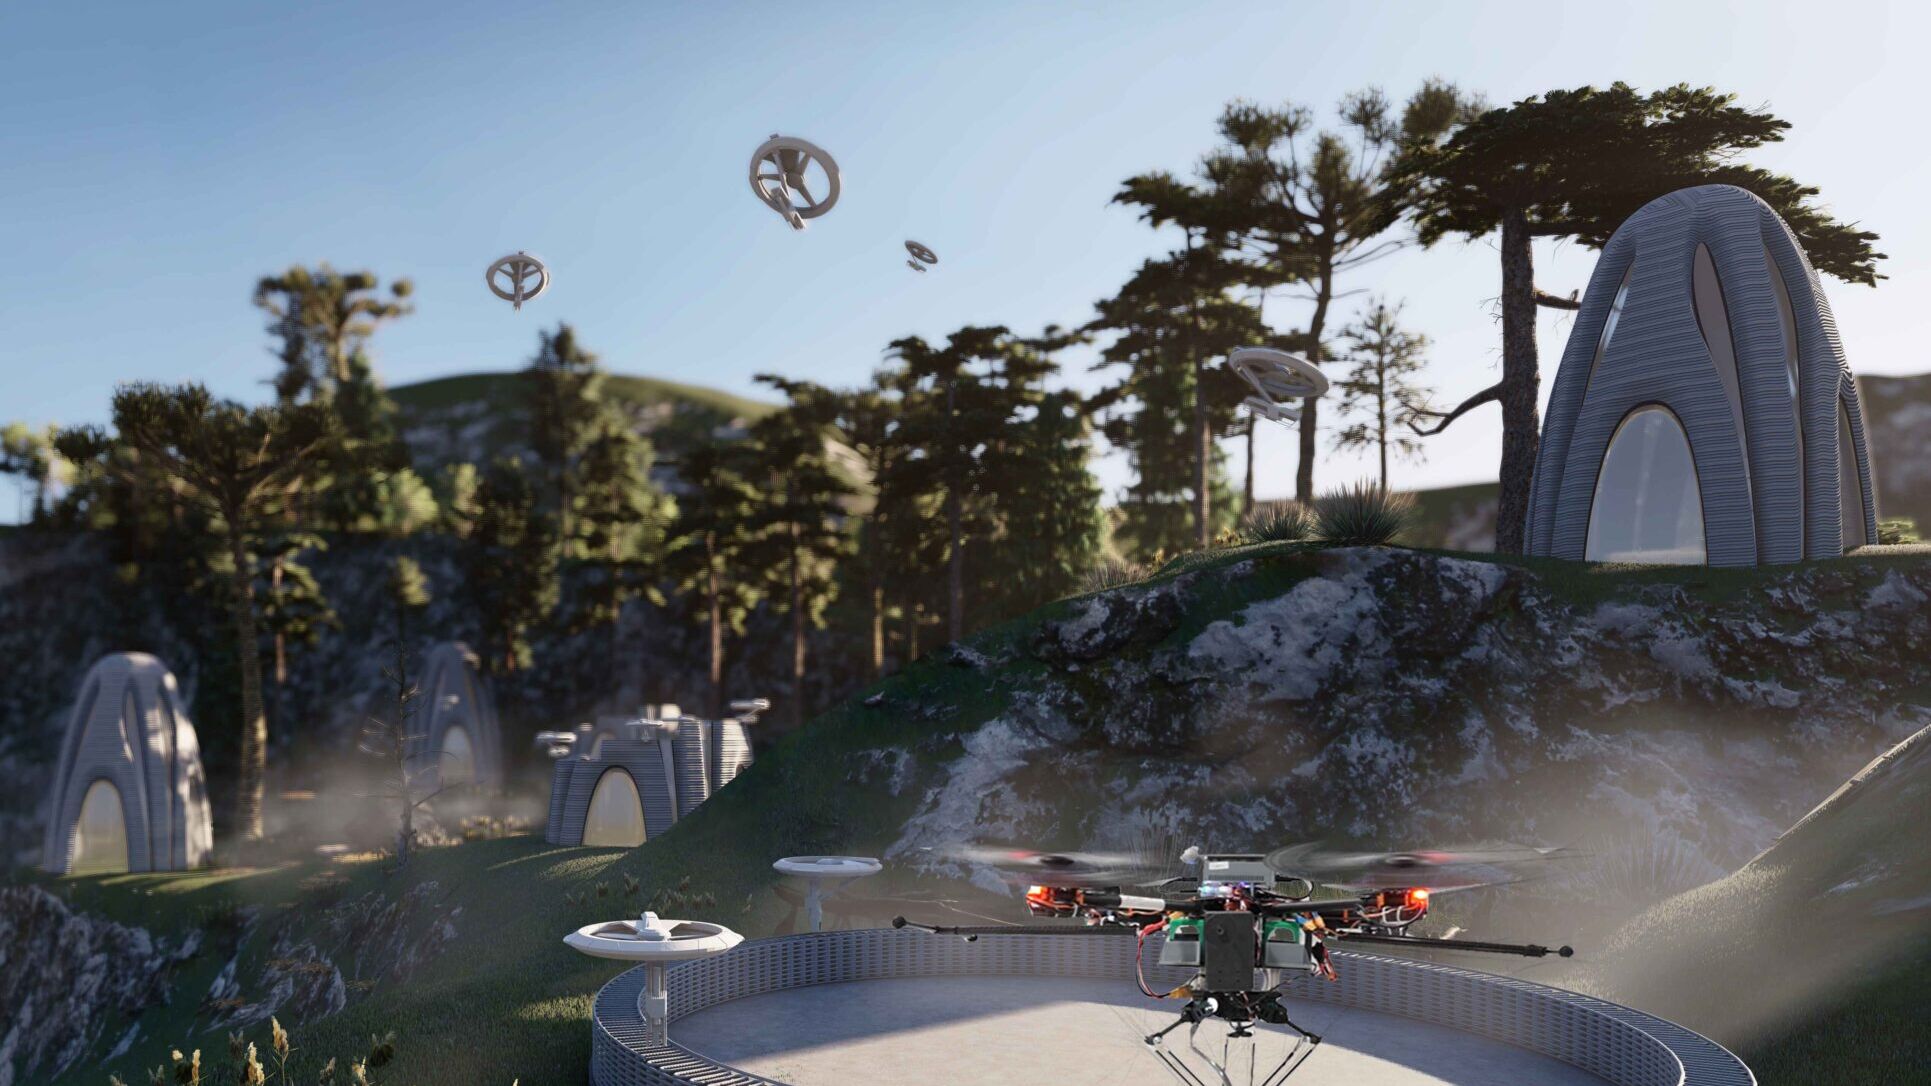 Droni collaborativi: lavoratori edili “offroad”: in foreste difficili da raggiungere, i droni potrebbero un giorno erigere costruzioni con un lavoro di squadra